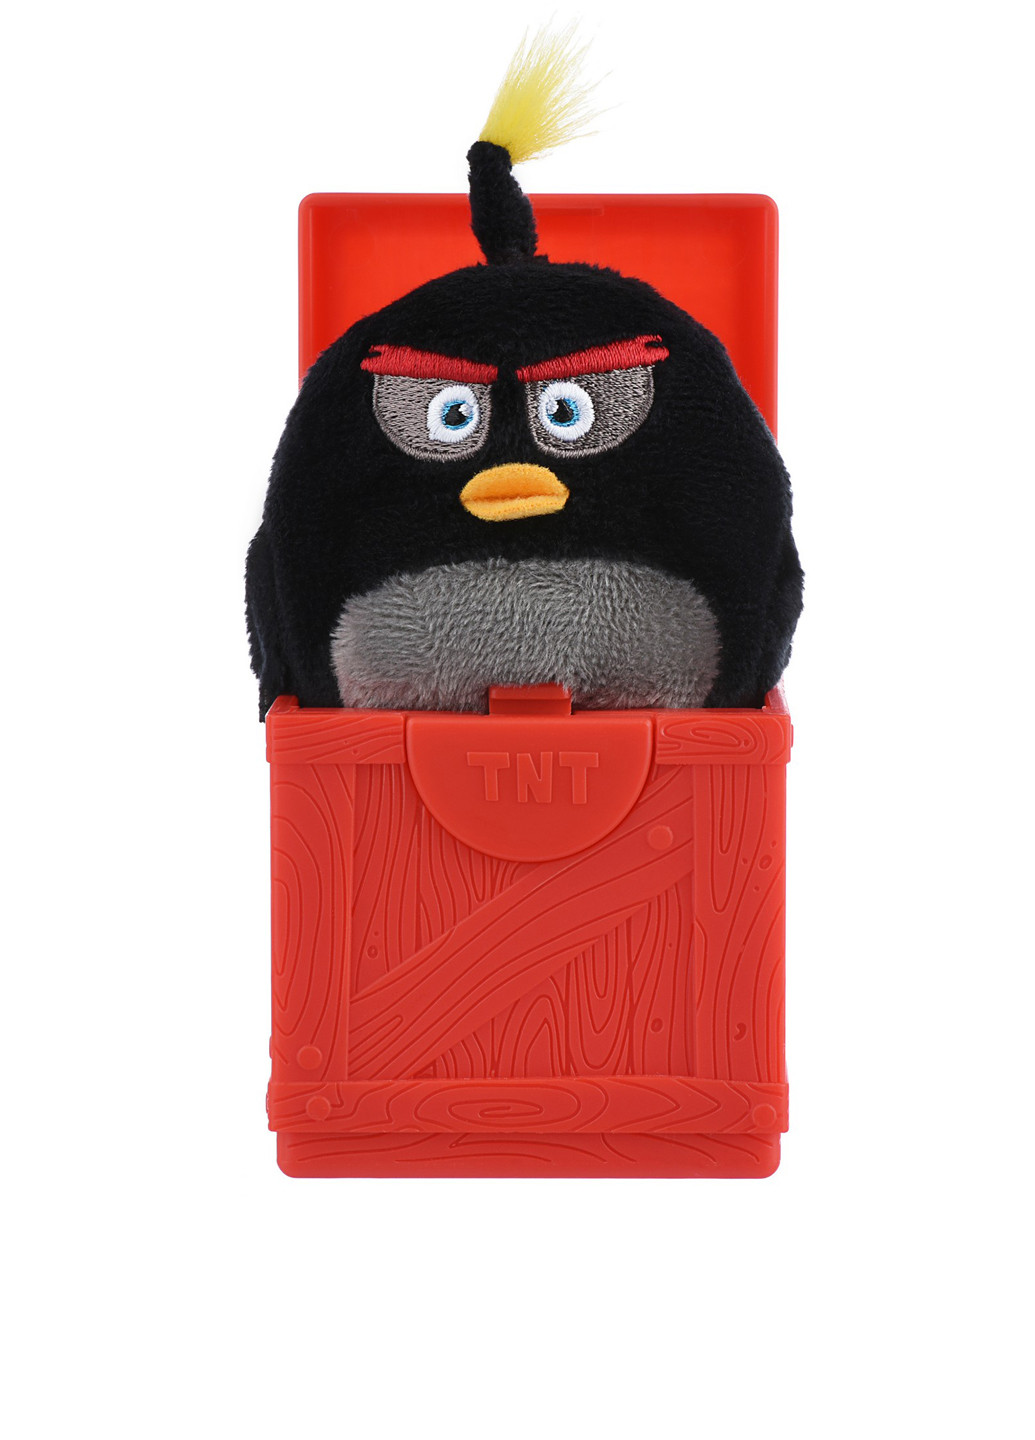 Мягкая игрушка-сюрприз в ассортименте, 6,5х6,5х6,5 см Angry Birds жёлтая